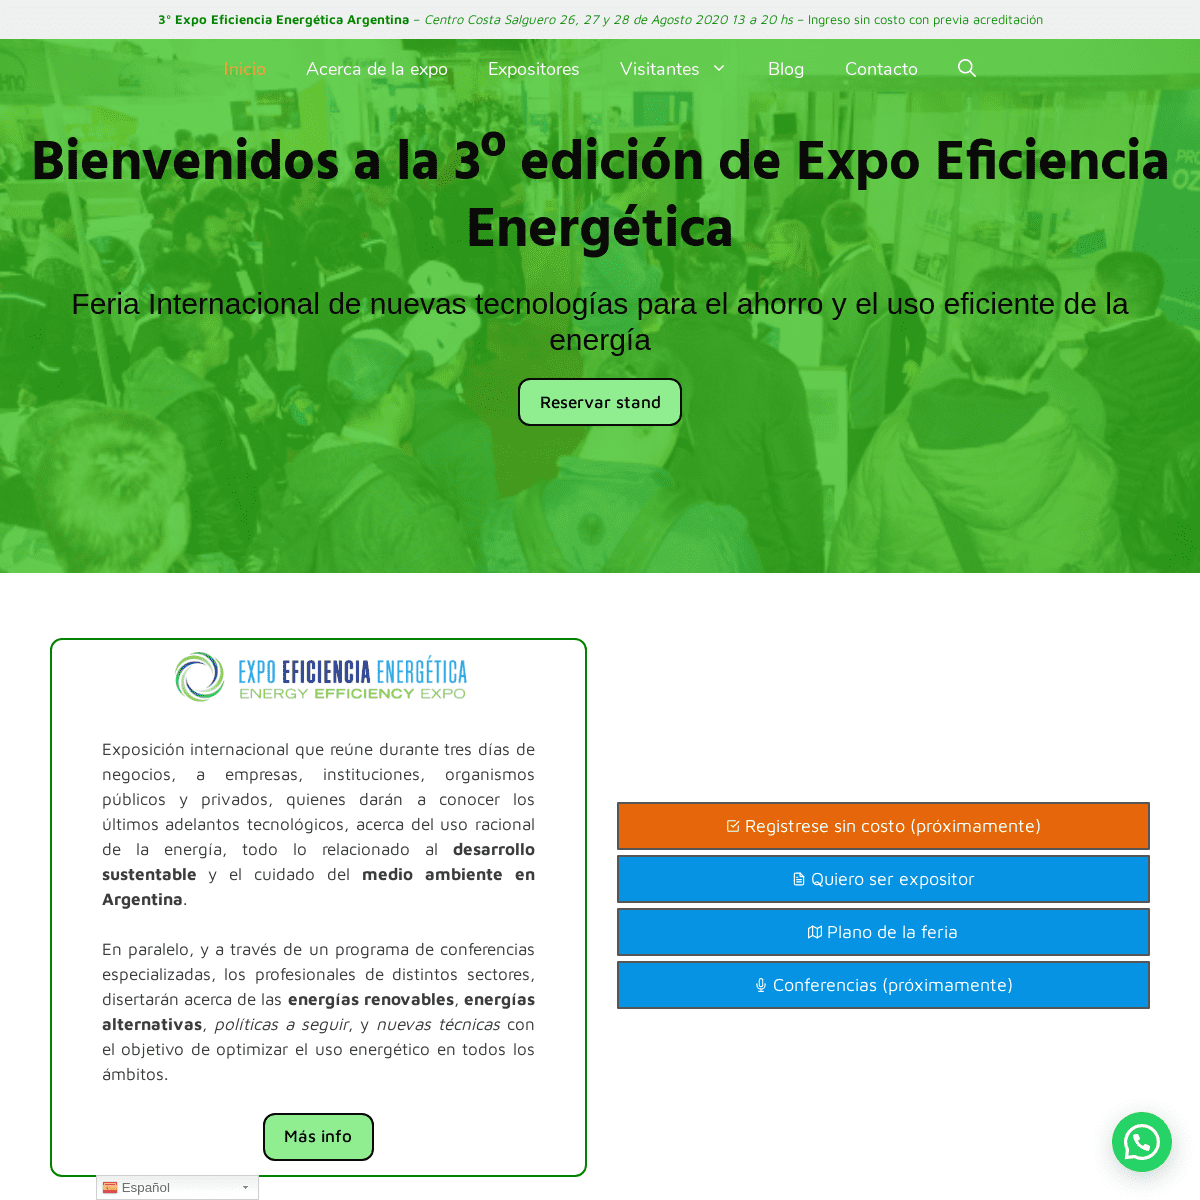 A complete backup of expoeficiencia-energetica.com